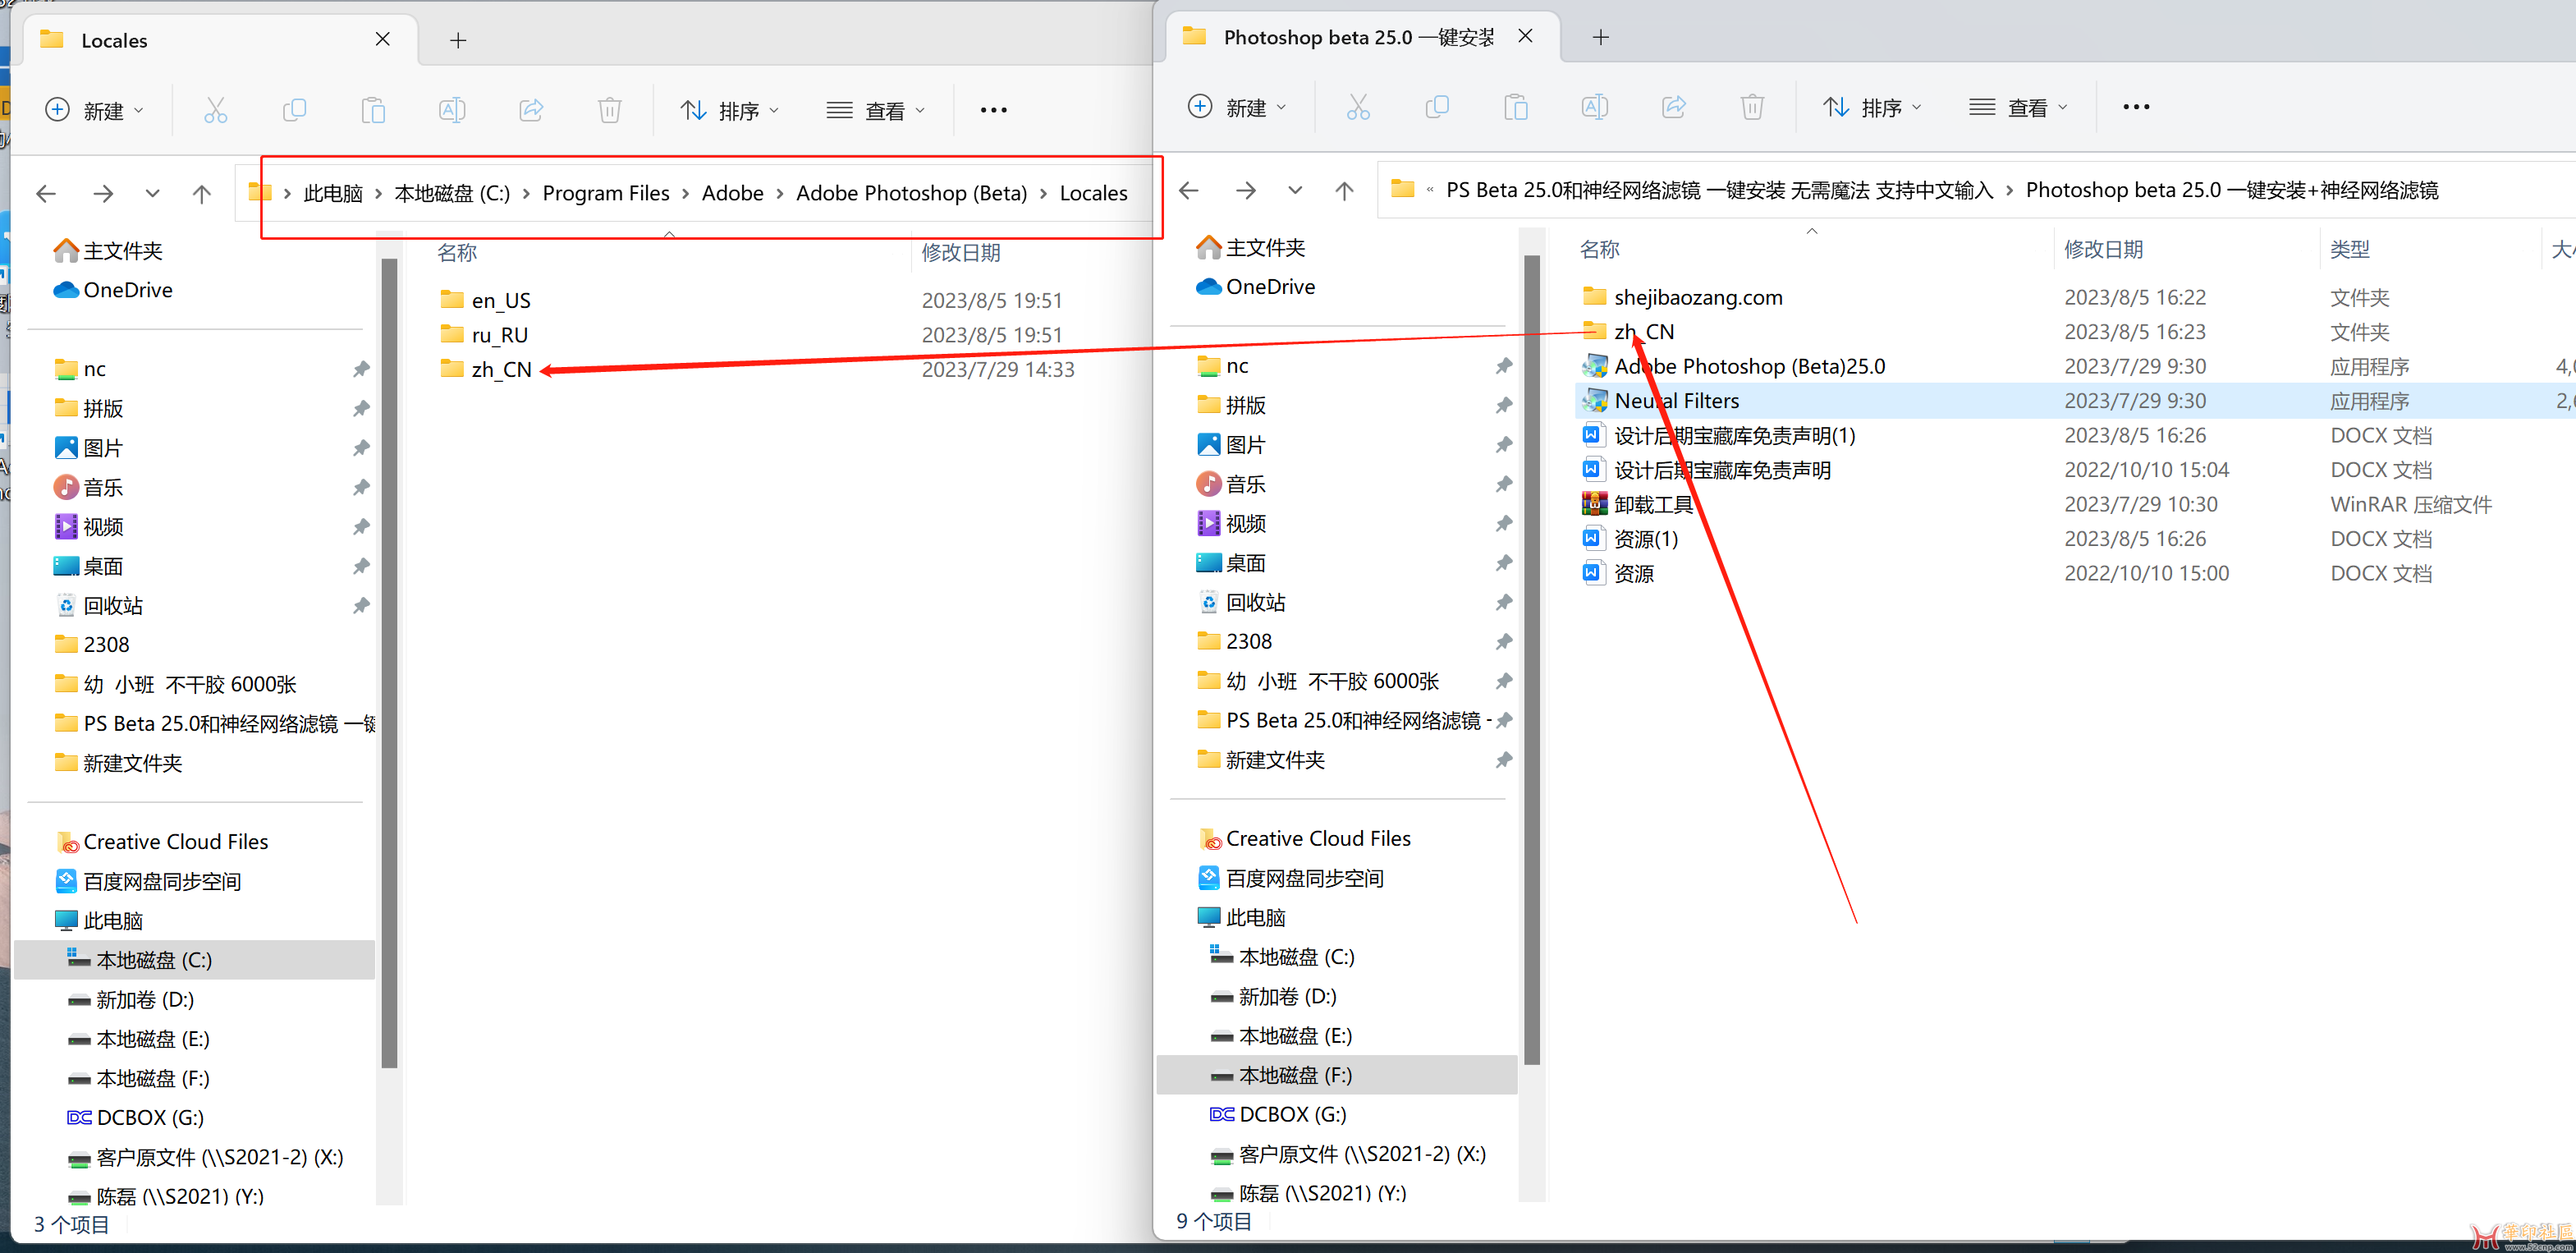 PS Beta 25.0和神经网络滤镜 一键安装 无需魔法 支持中文输入{tag}(6)